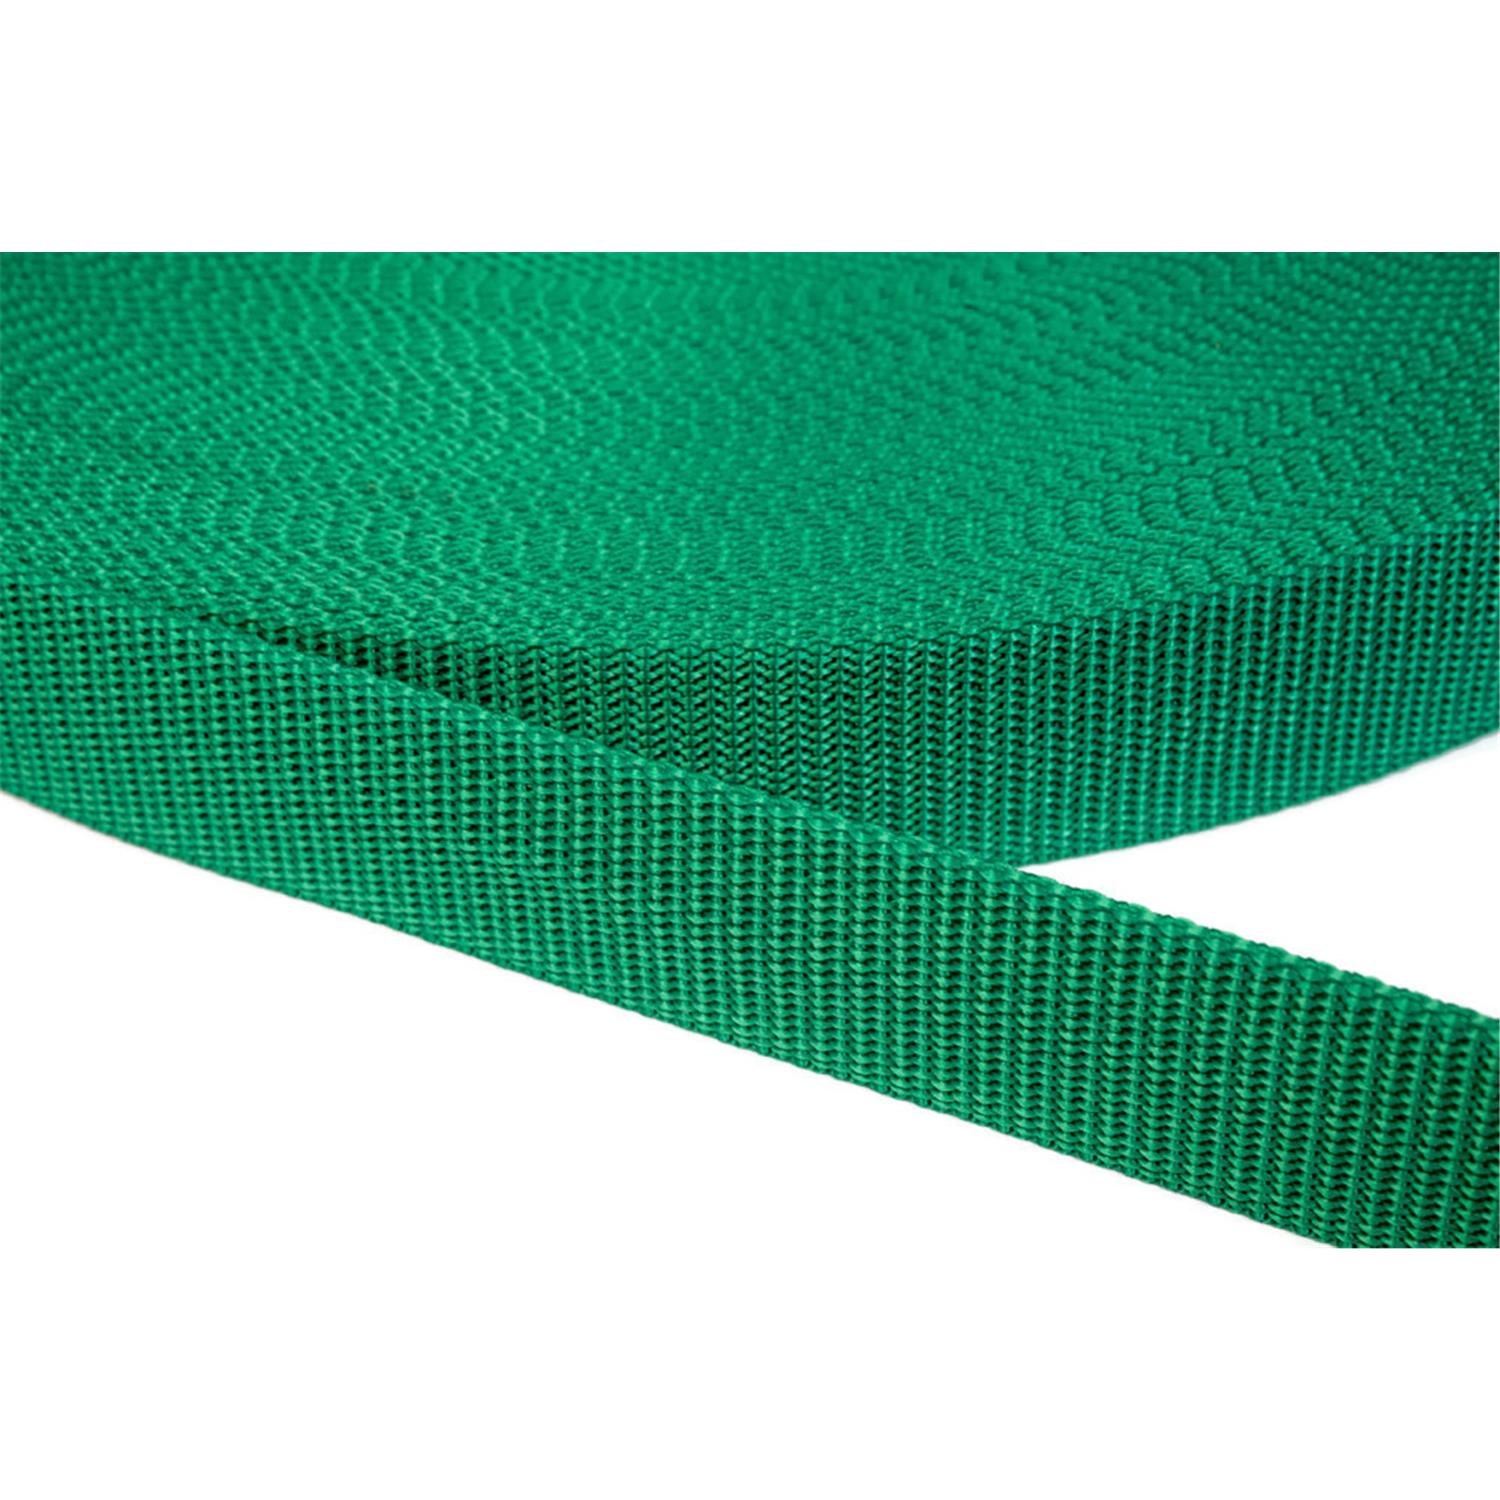 Gurtband 40mm breit aus Polypropylen in 41 Farben 34 - grün 12 Meter